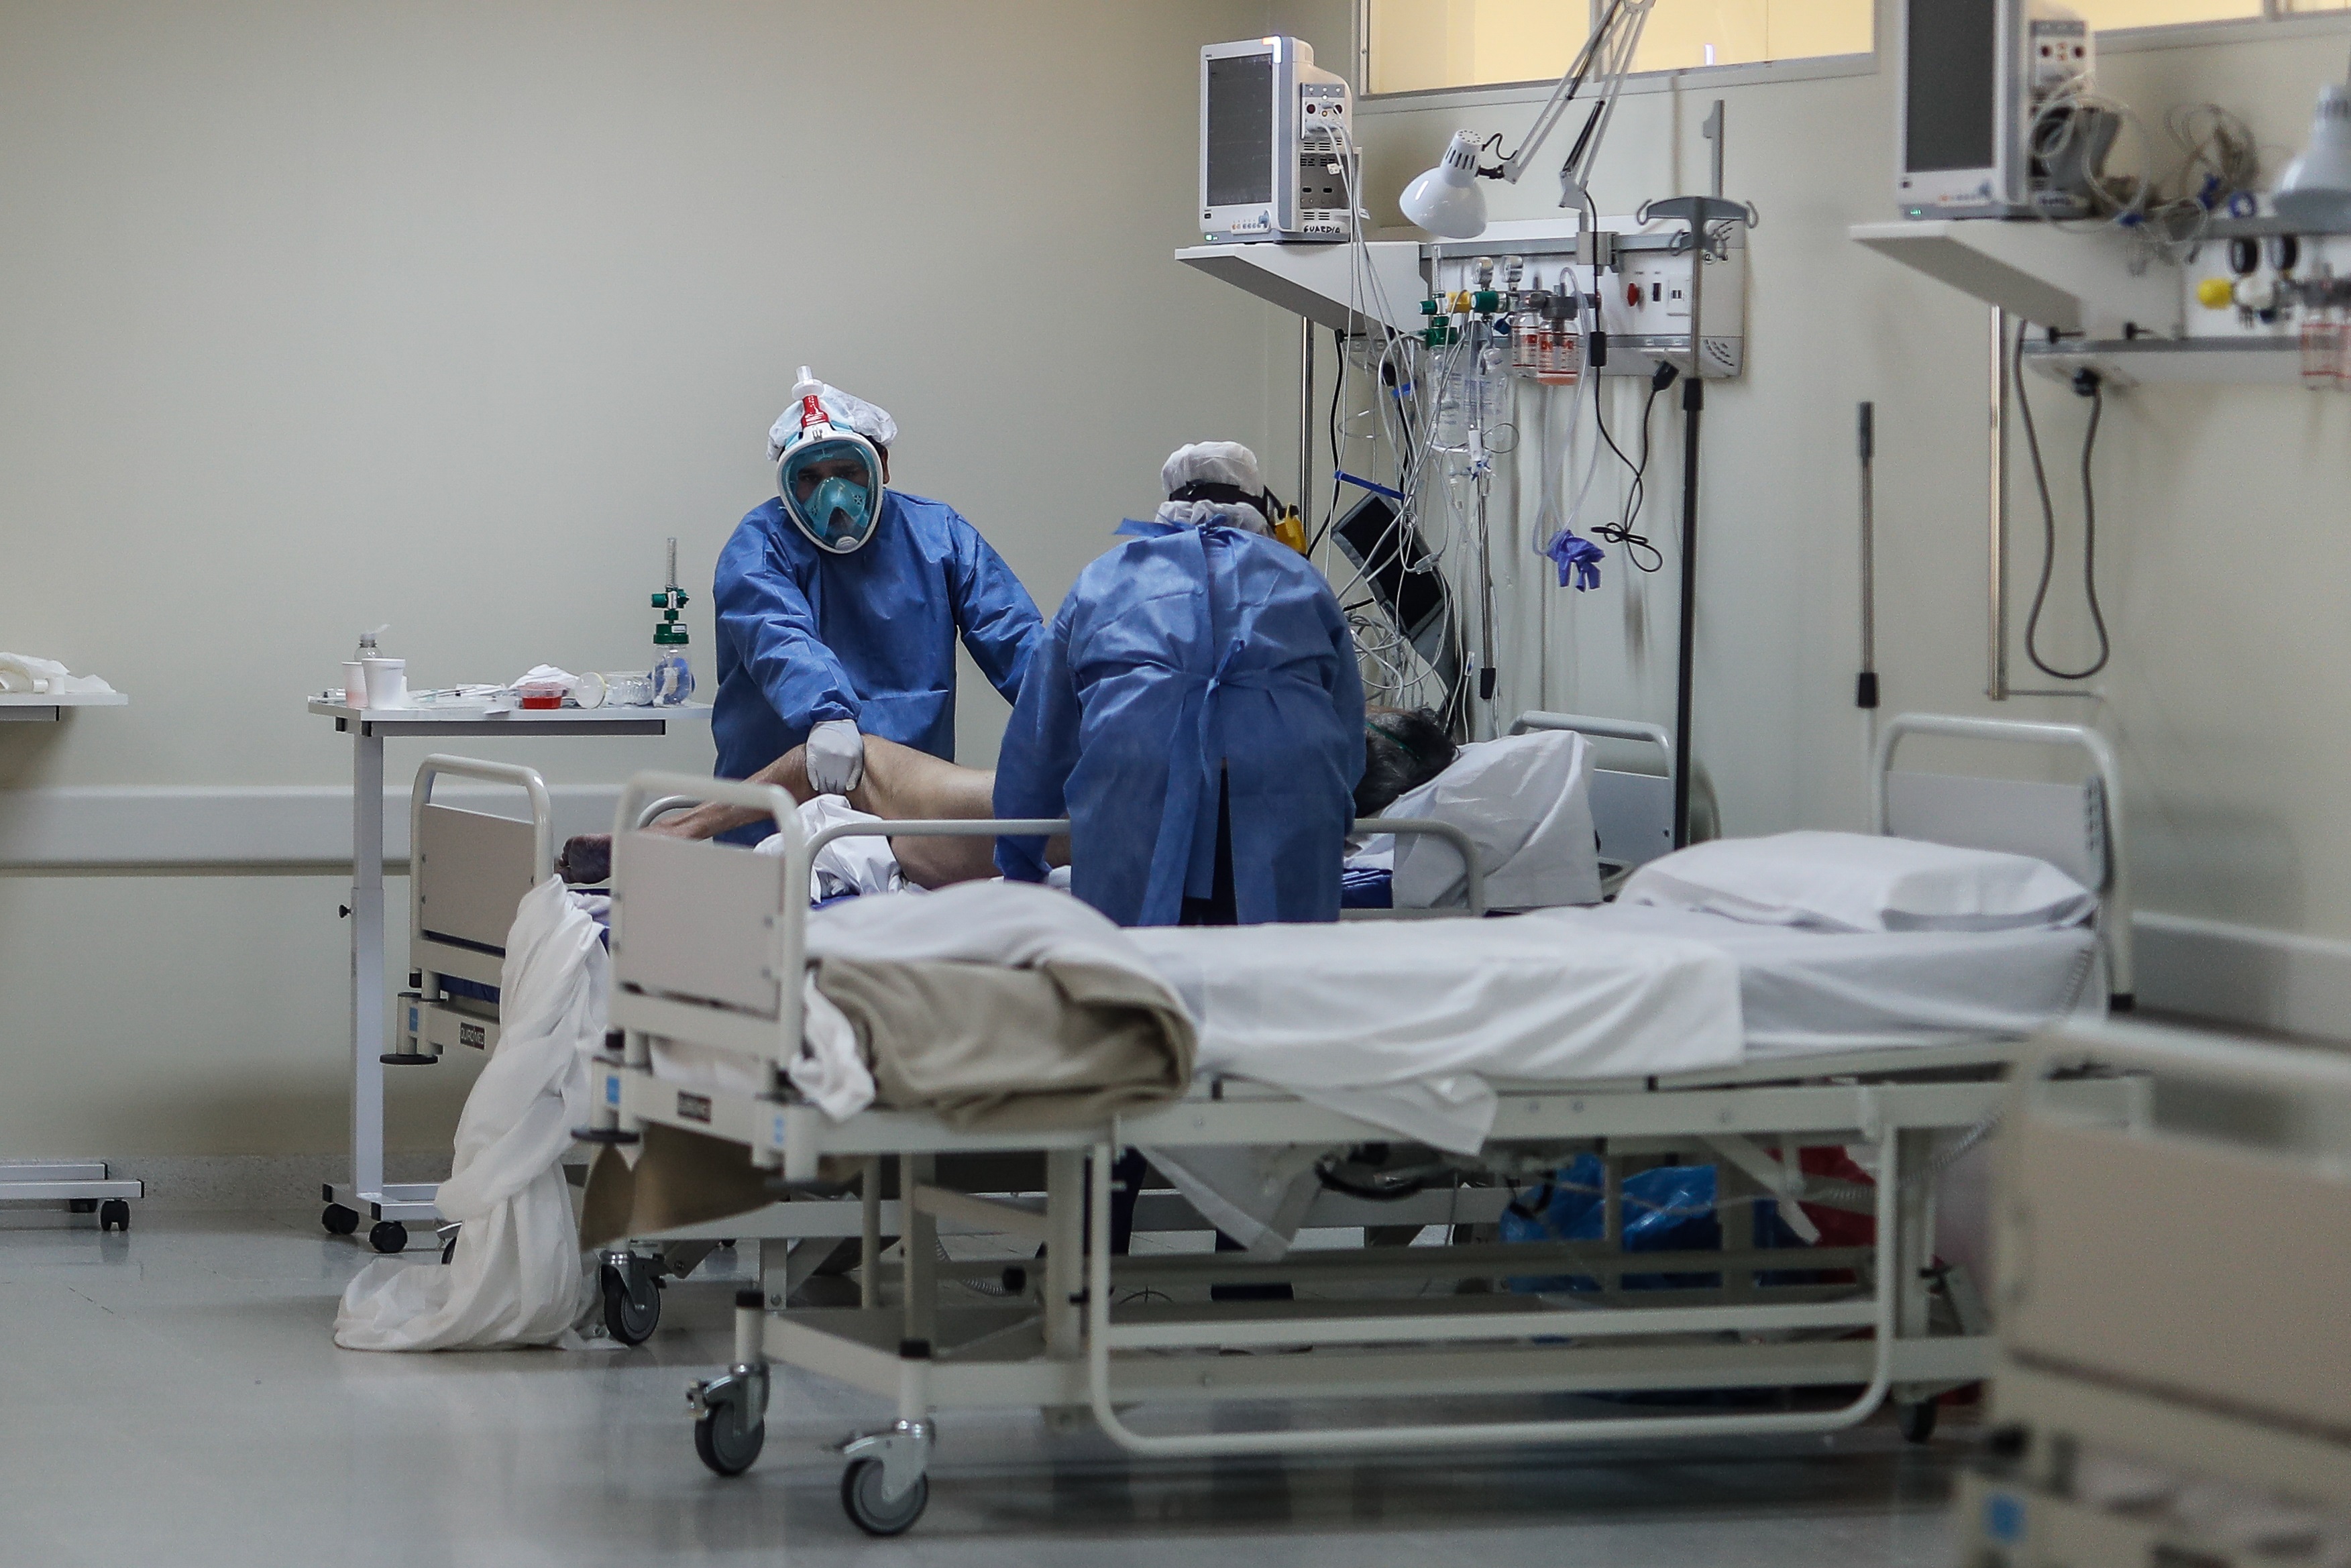 Vista de cuidados que reciben enfermos de COVID-19 en el Hospital del Bicentenario de Esteban Echeverria, en Buenos Aires (Argentina).
EFE/Juan Ignacio Roncoroni/
